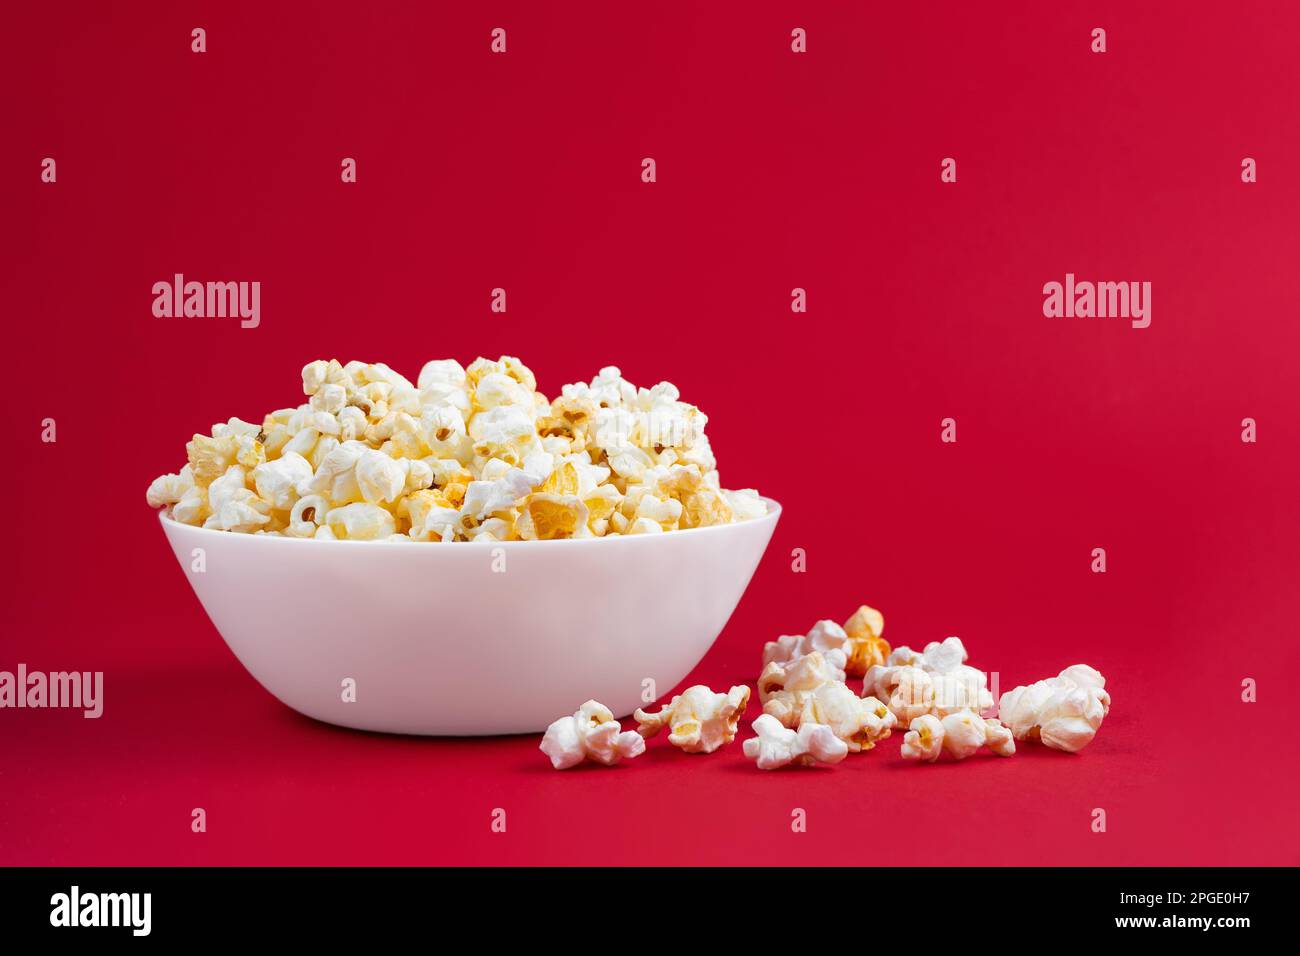 Formaggio saporito popcorn sparso in ciotola bianca isolato su sfondo rosso. Piano di giacitura, vista dall'alto. Fast food, cinema, cinema Foto Stock